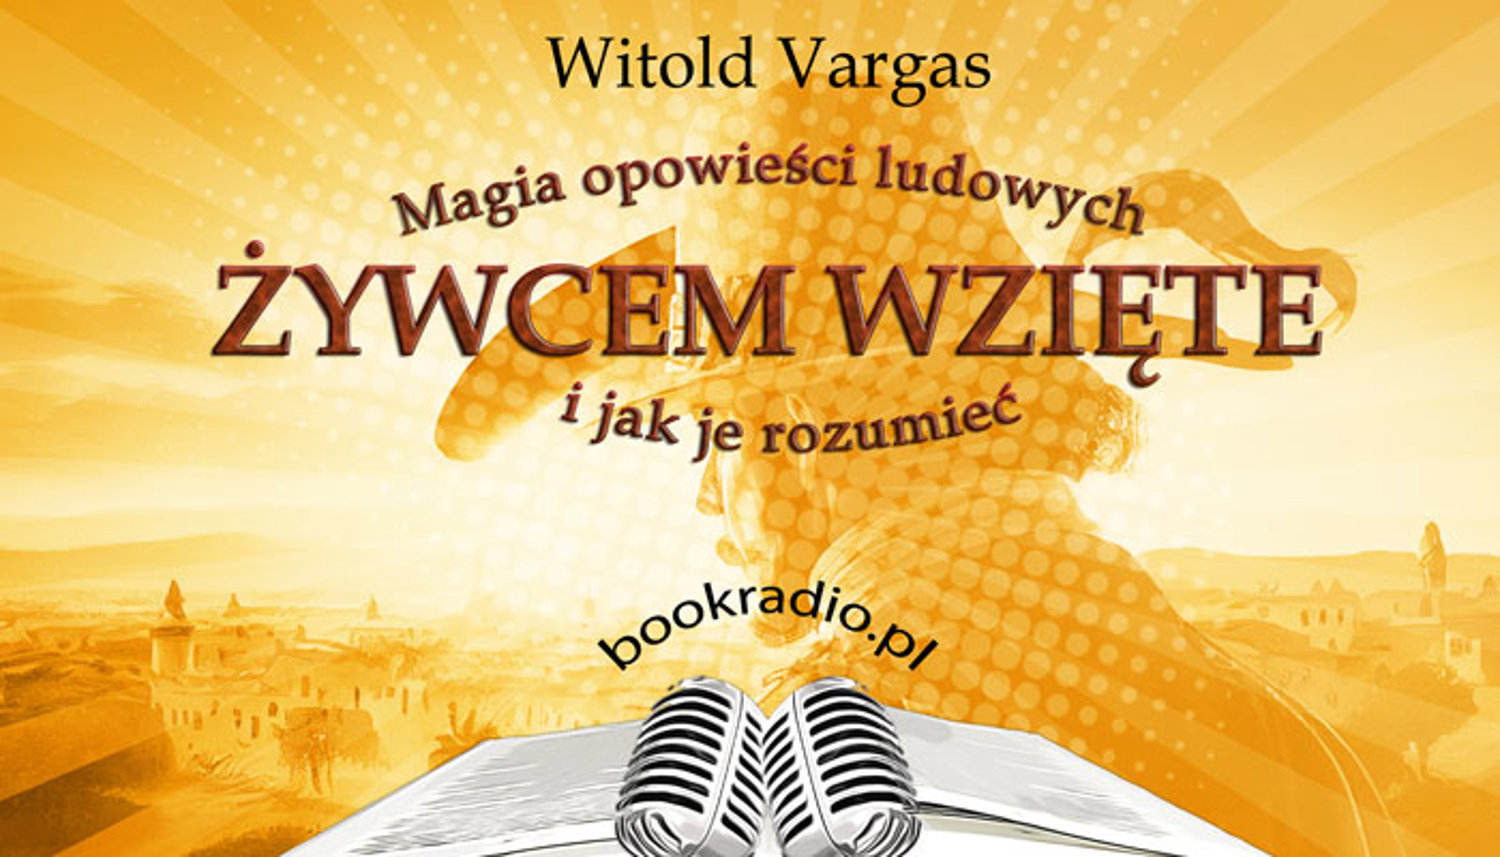 Chodził Bóg po świecie - Witold Vargas - magia opowieści ludowych